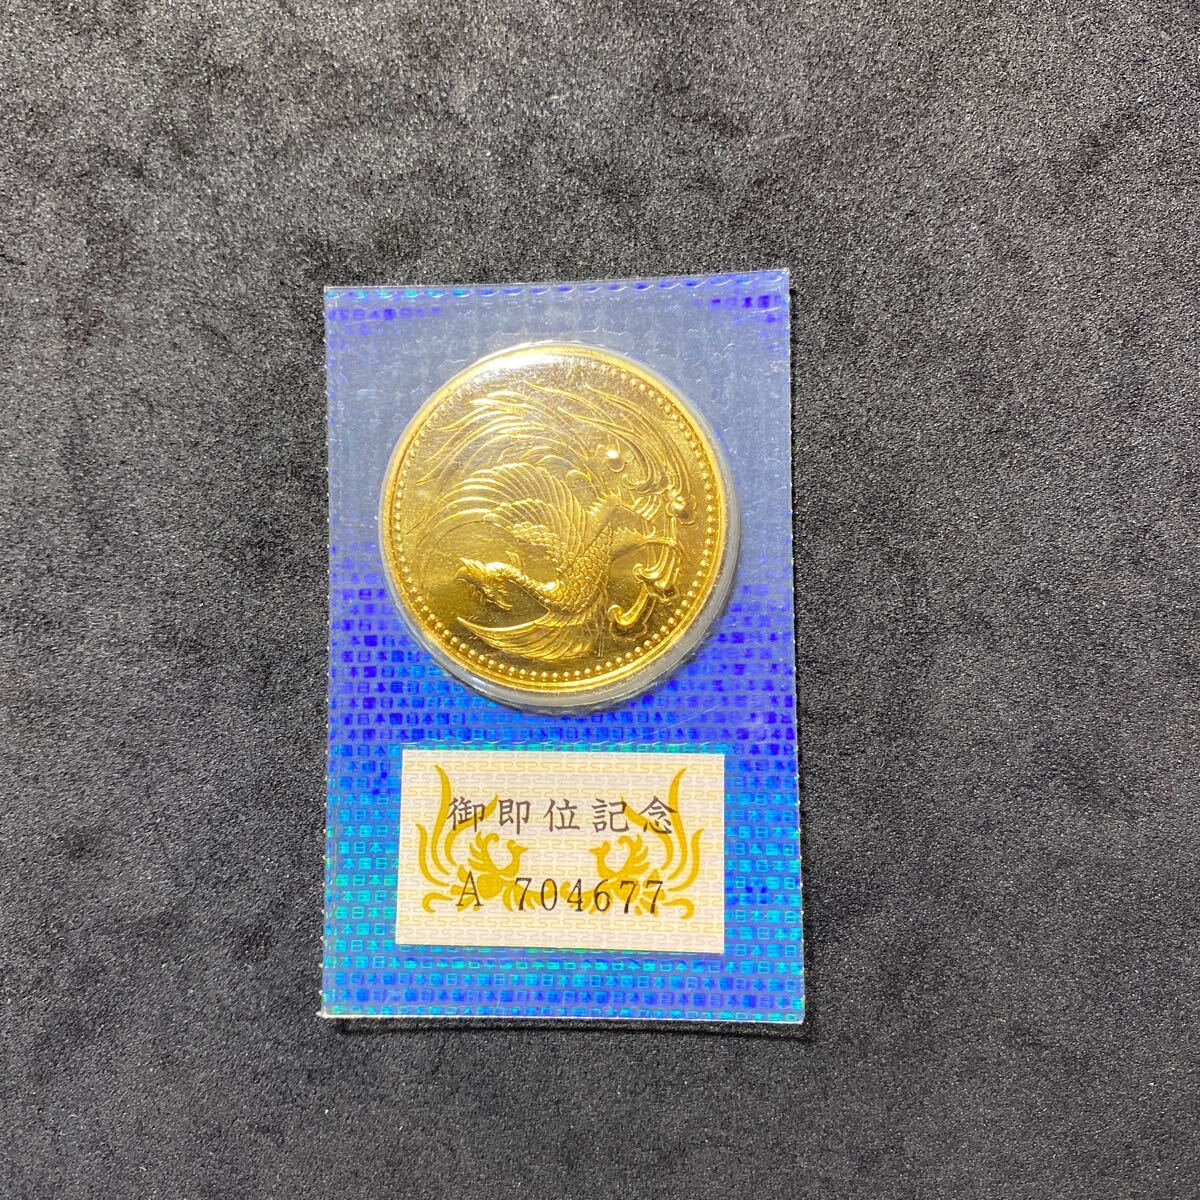 天皇陛下御即位記念 10万円金貨 金貨 ブリスターパック入り の画像1